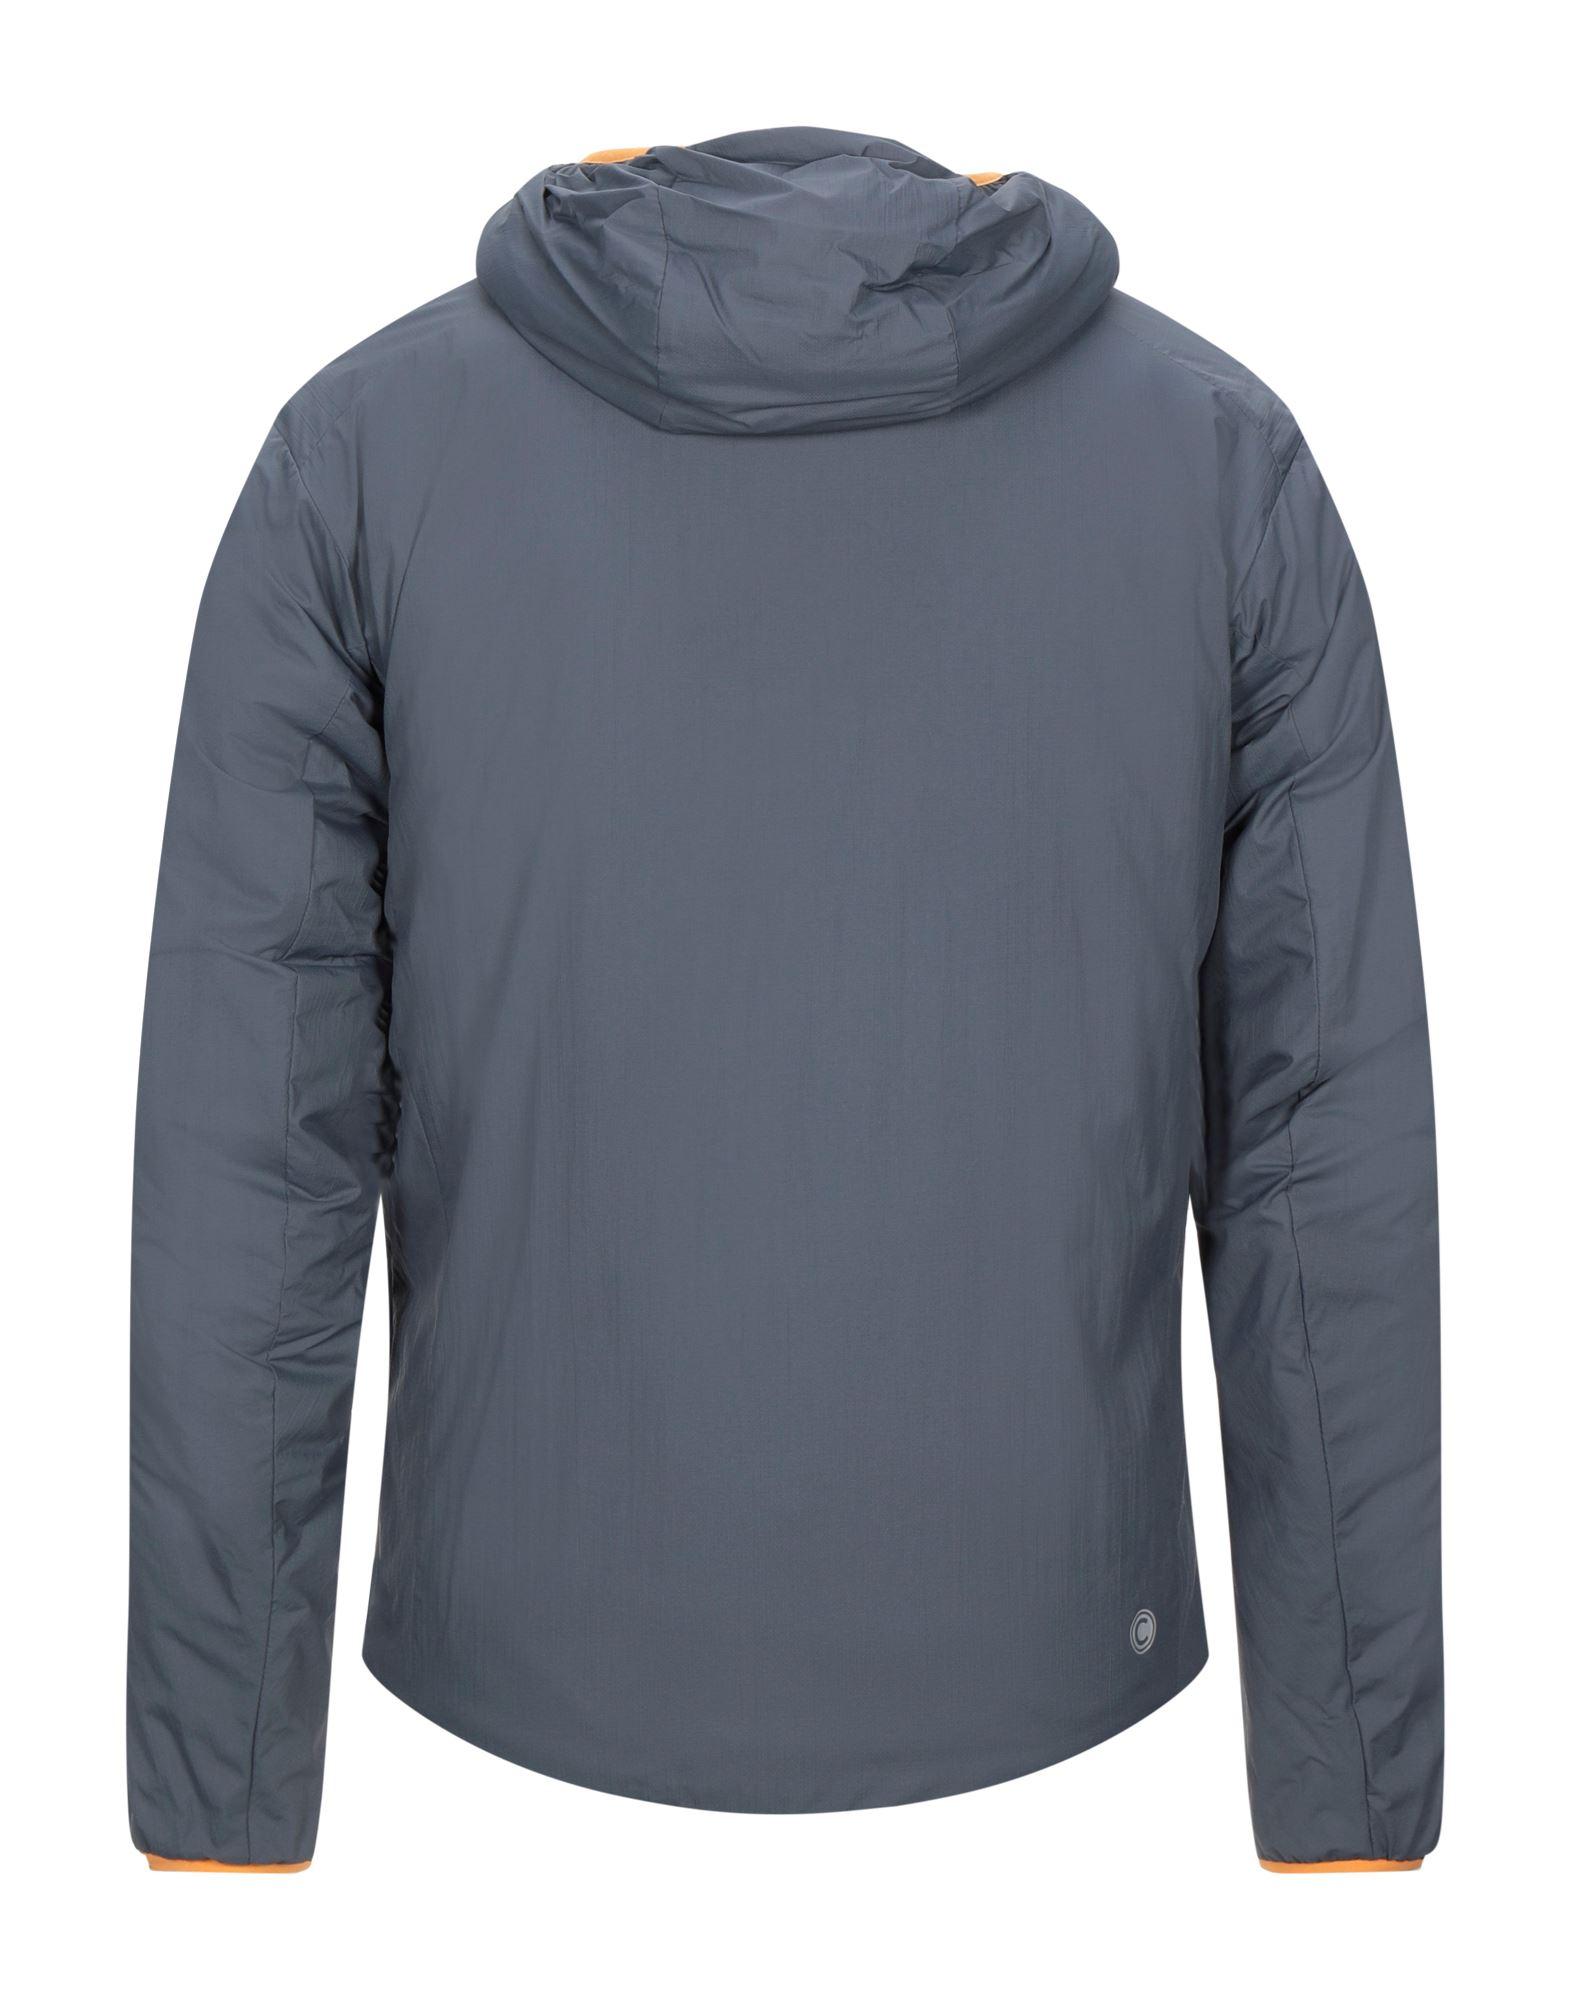 Colmar Synthetic Jacket in Lead (Gray) for Men - Lyst